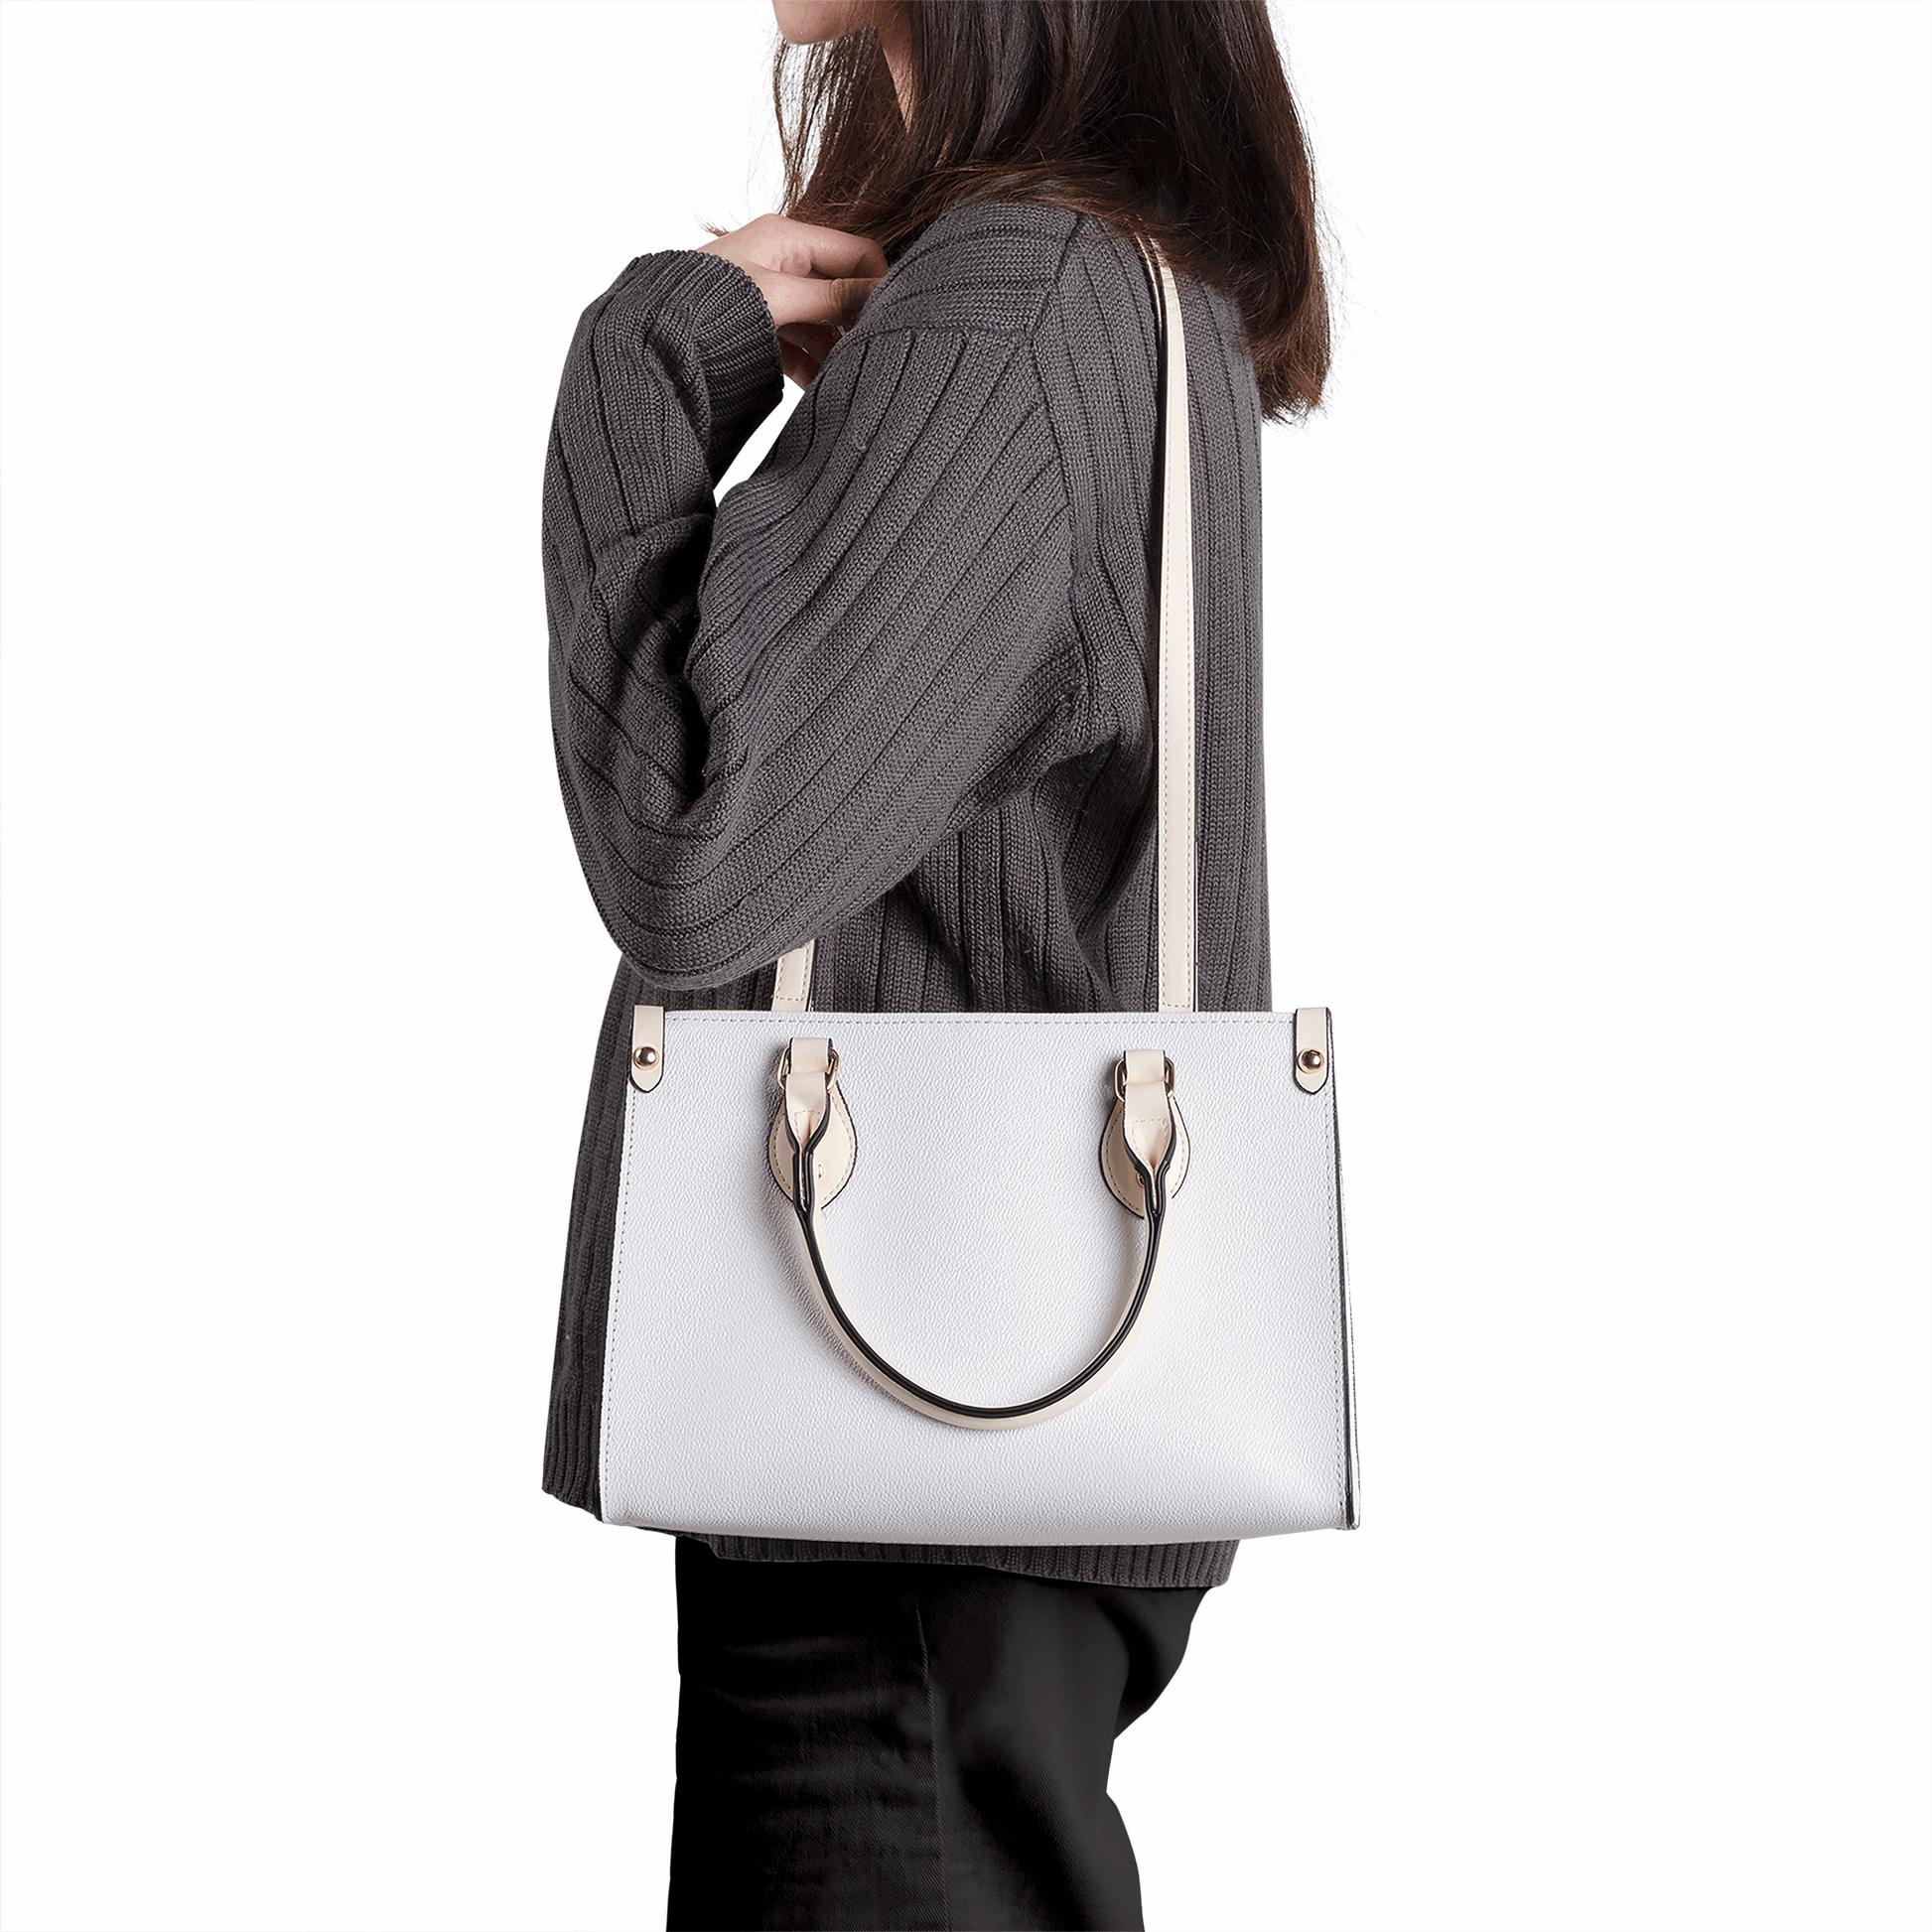 Create Your Own Luxury Women PU Handbag - White